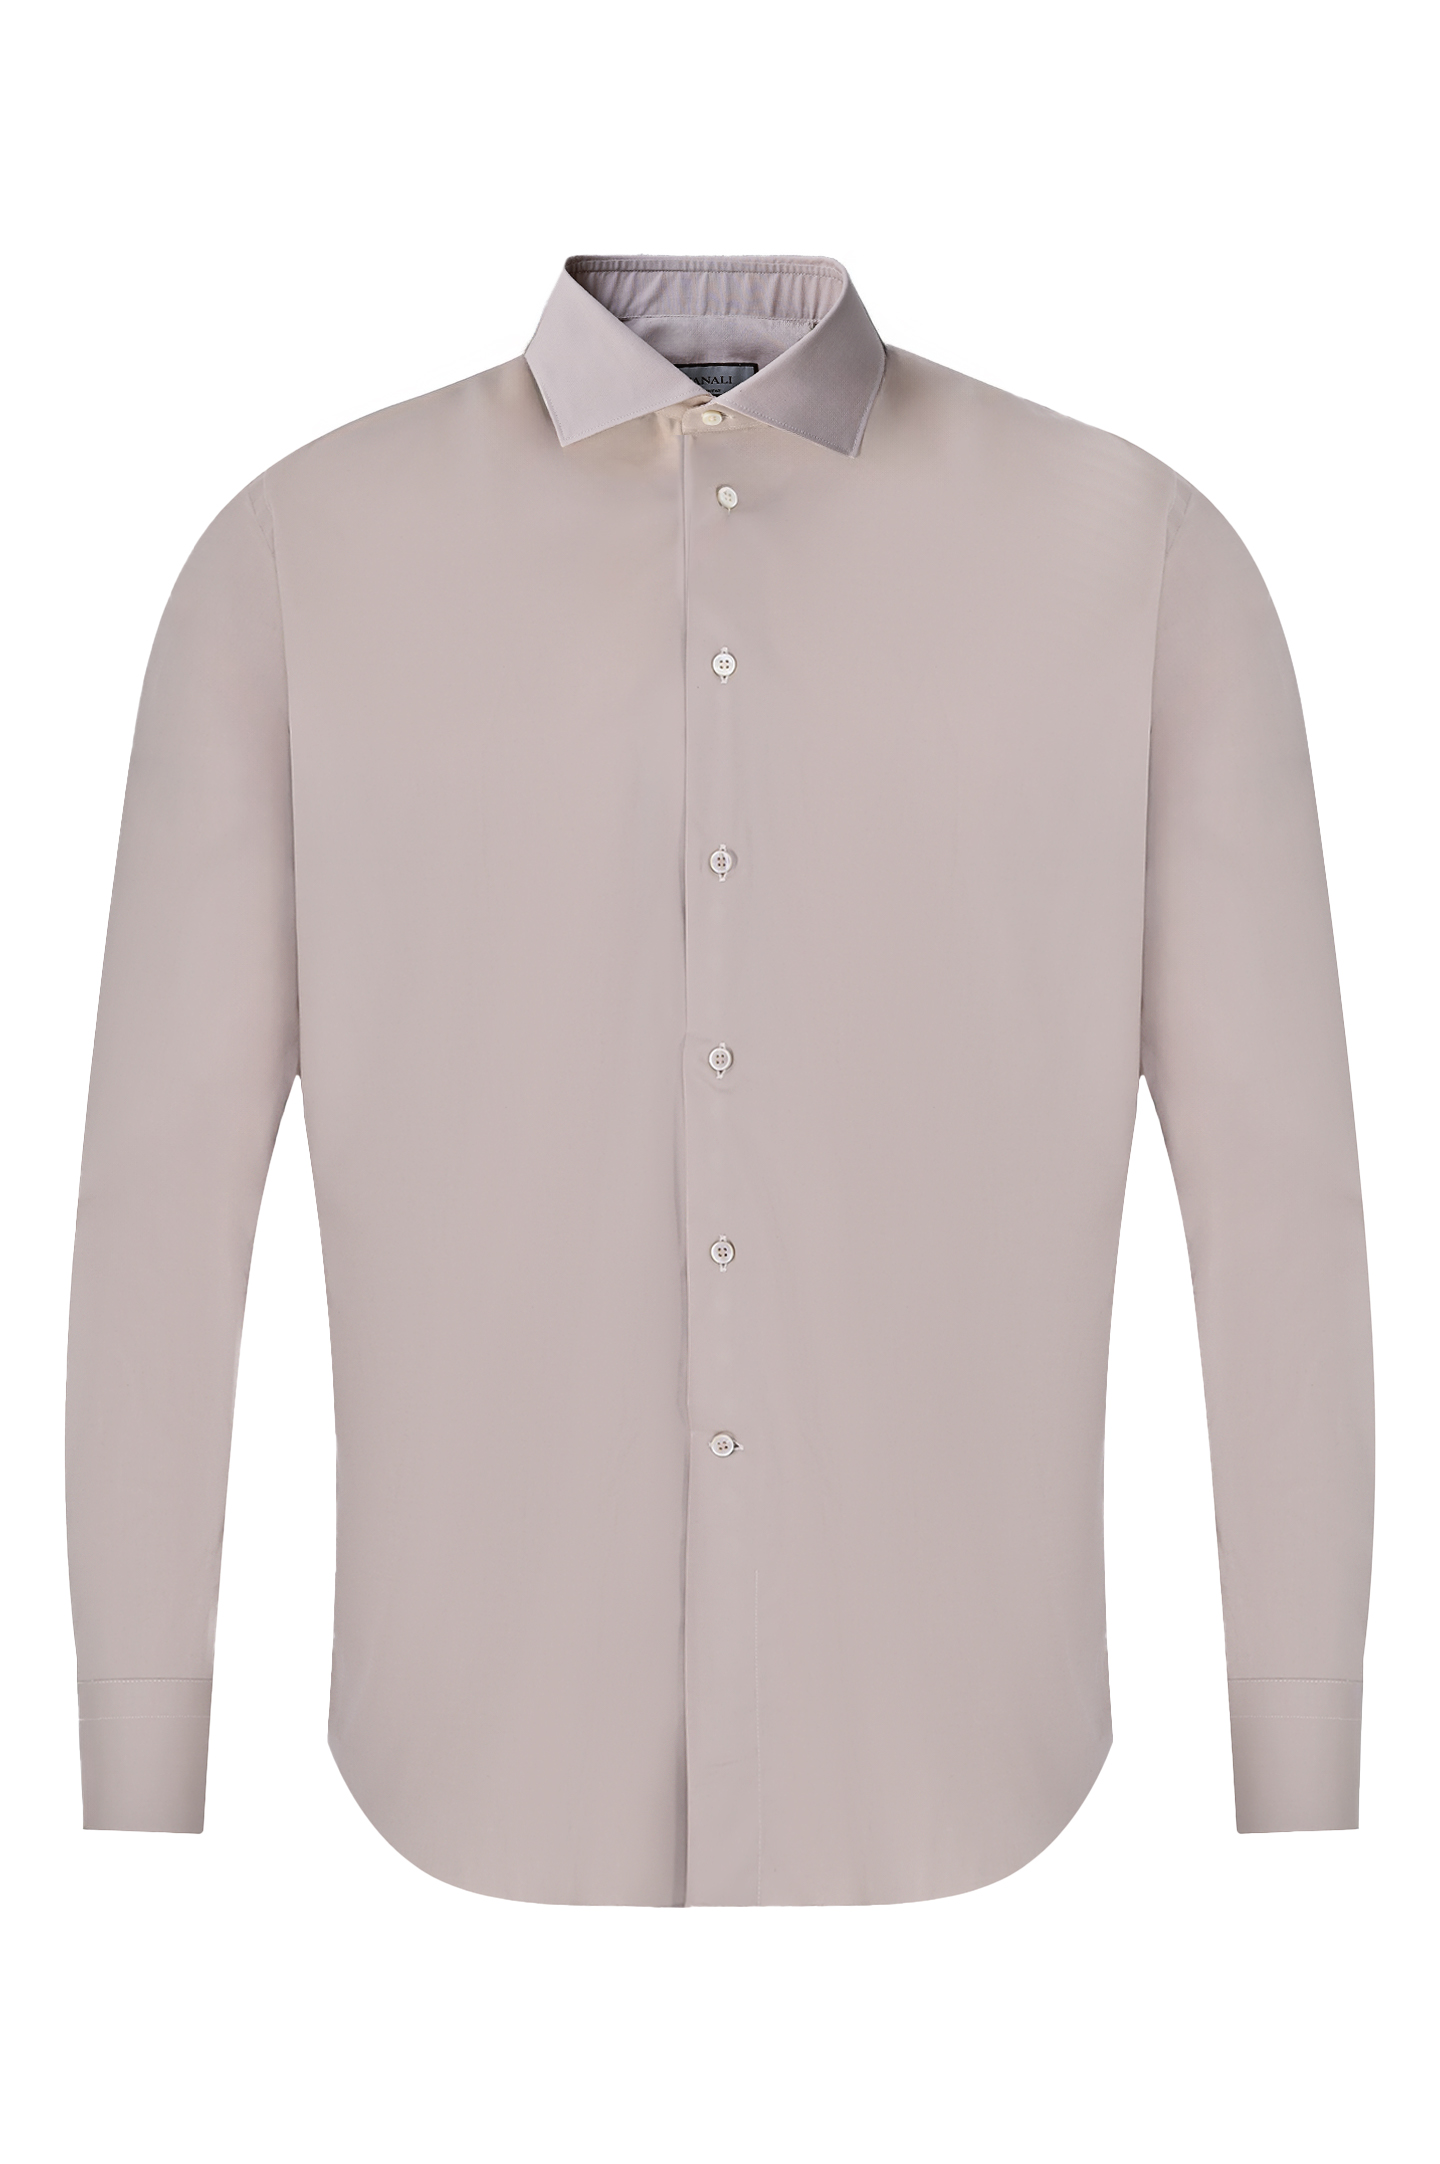 Рубашка из хлопка и эластана CANALI GD02832 7C3/1, цвет: Светло-бежевый, Мужской